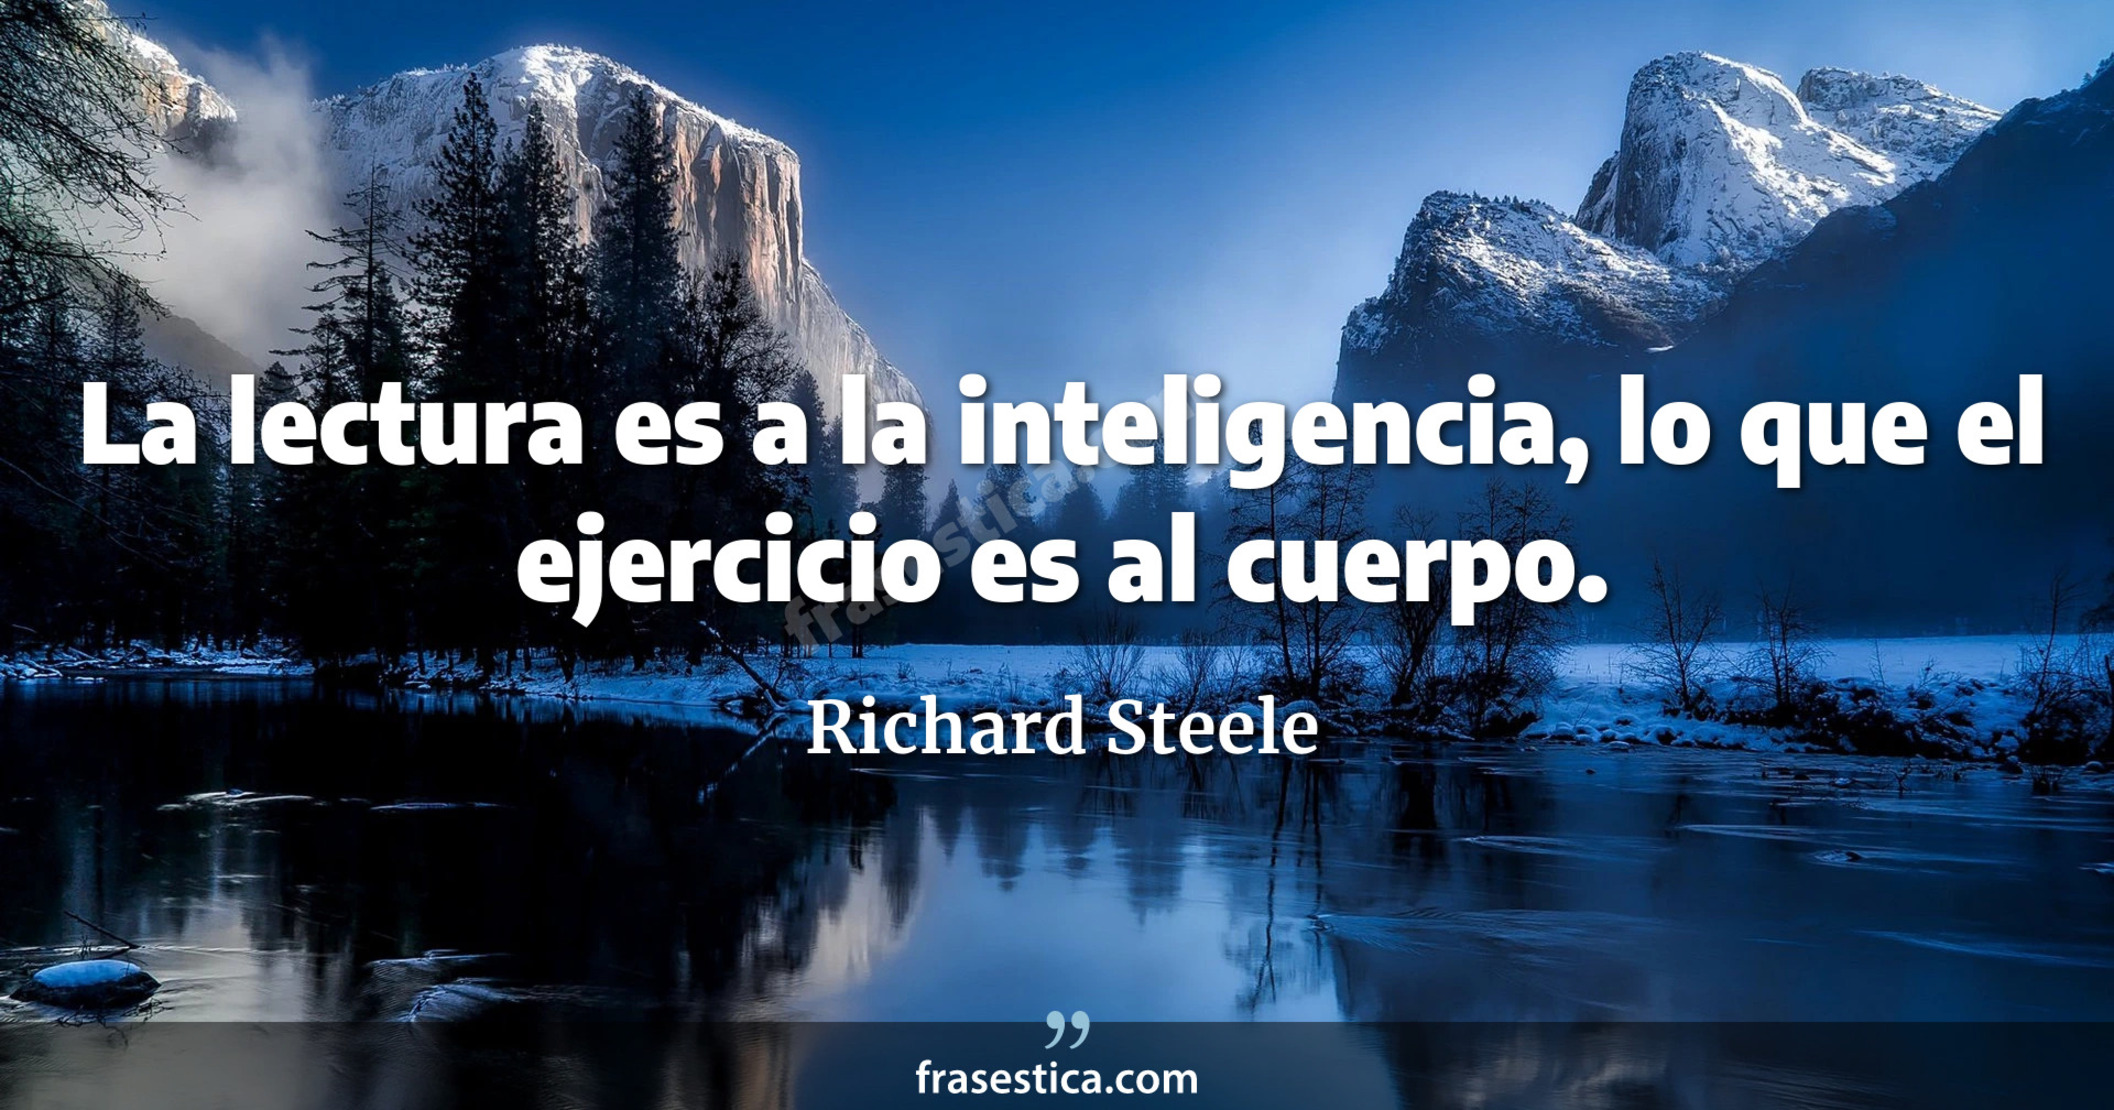 La lectura es a la inteligencia, lo que el ejercicio es al cuerpo. - Richard Steele